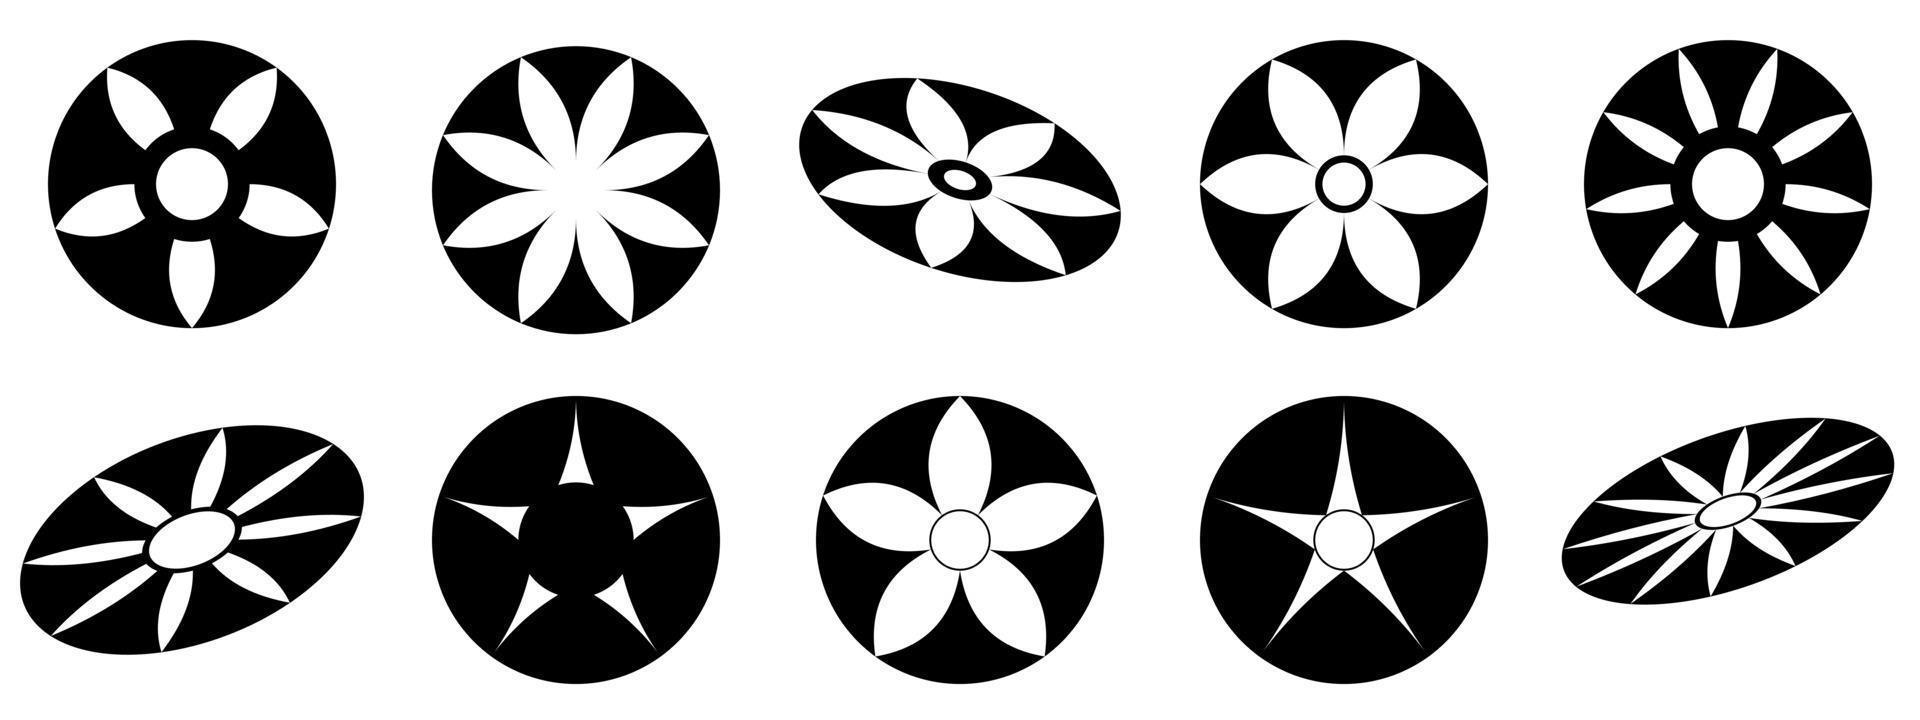 stjärna blomma form ikon för dekorativ abstrakt bakgrund vektorillustration vektor